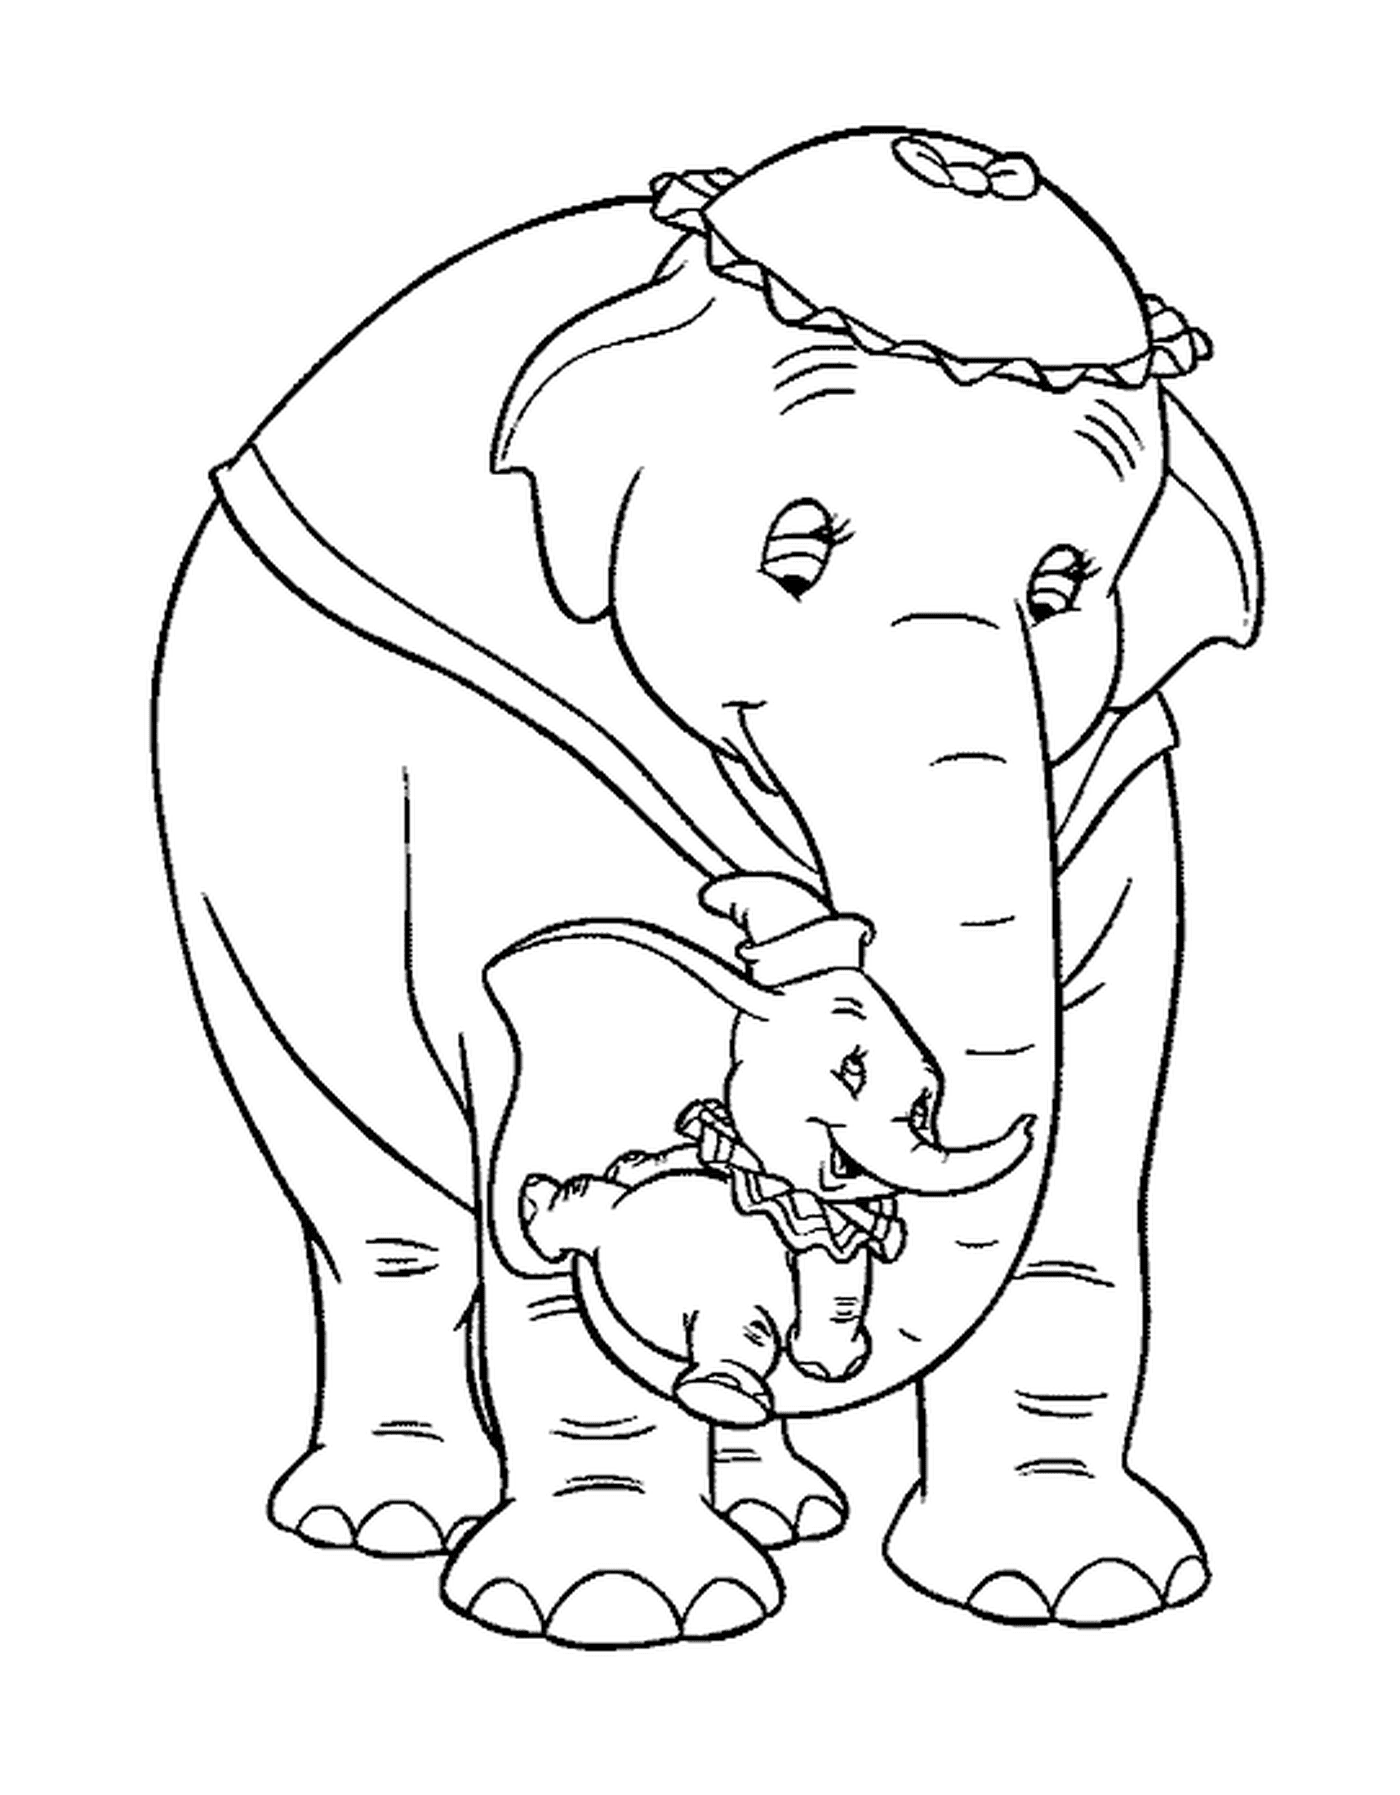  Взрослый слон и его ребенок по соседству 